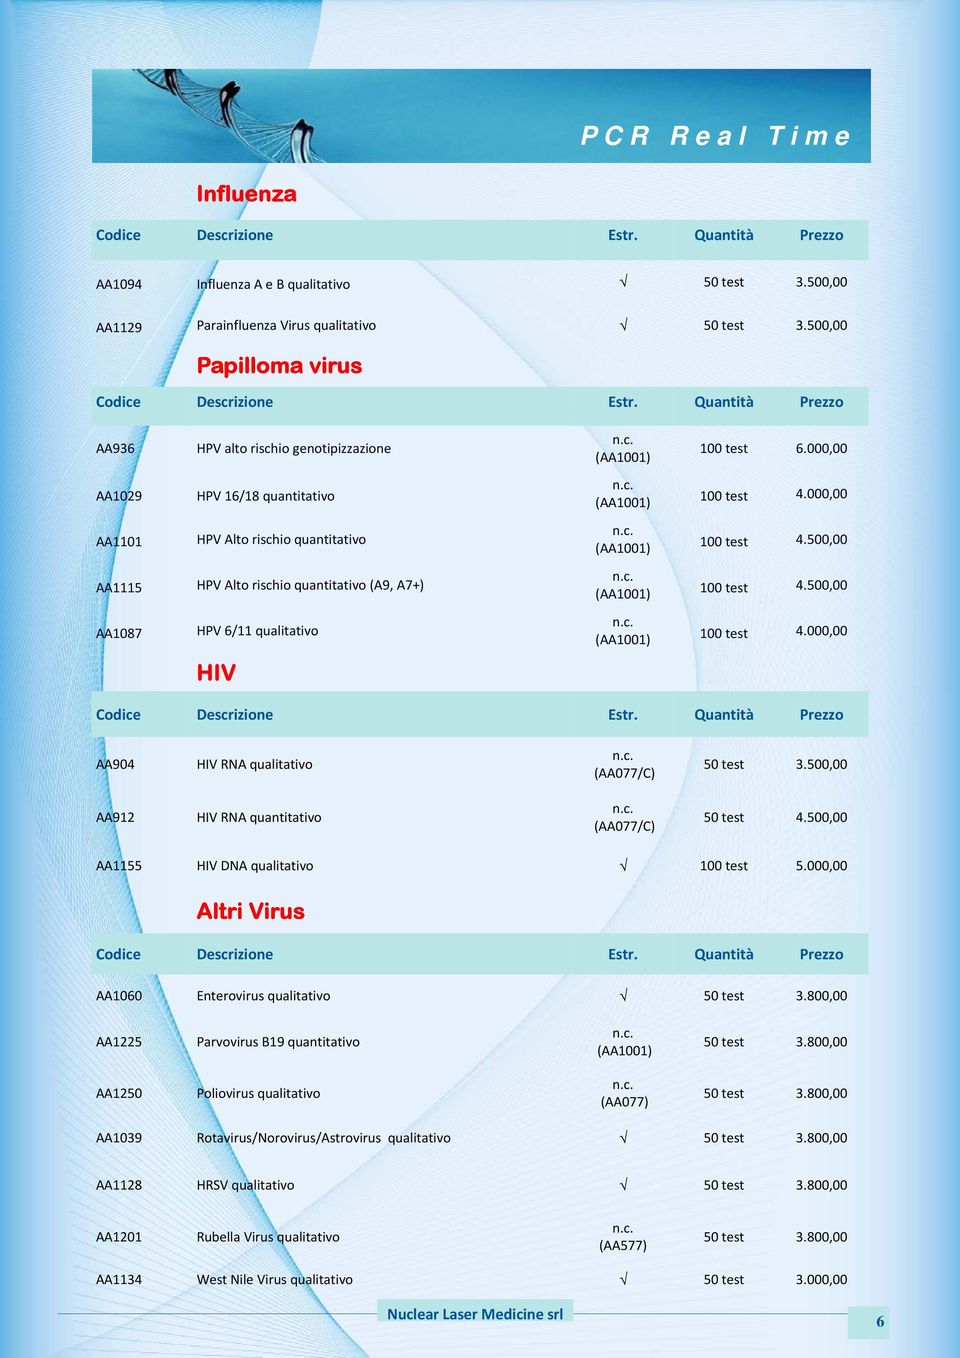 000,00 AA1101 HPV Alto rischio quantitativo 100 test 4.500,00 AA1115 HPV Alto rischio quantitativo (A9, A7+) 100 test 4.500,00 AA1087 HPV 6/11 qualitativo 100 test 4.